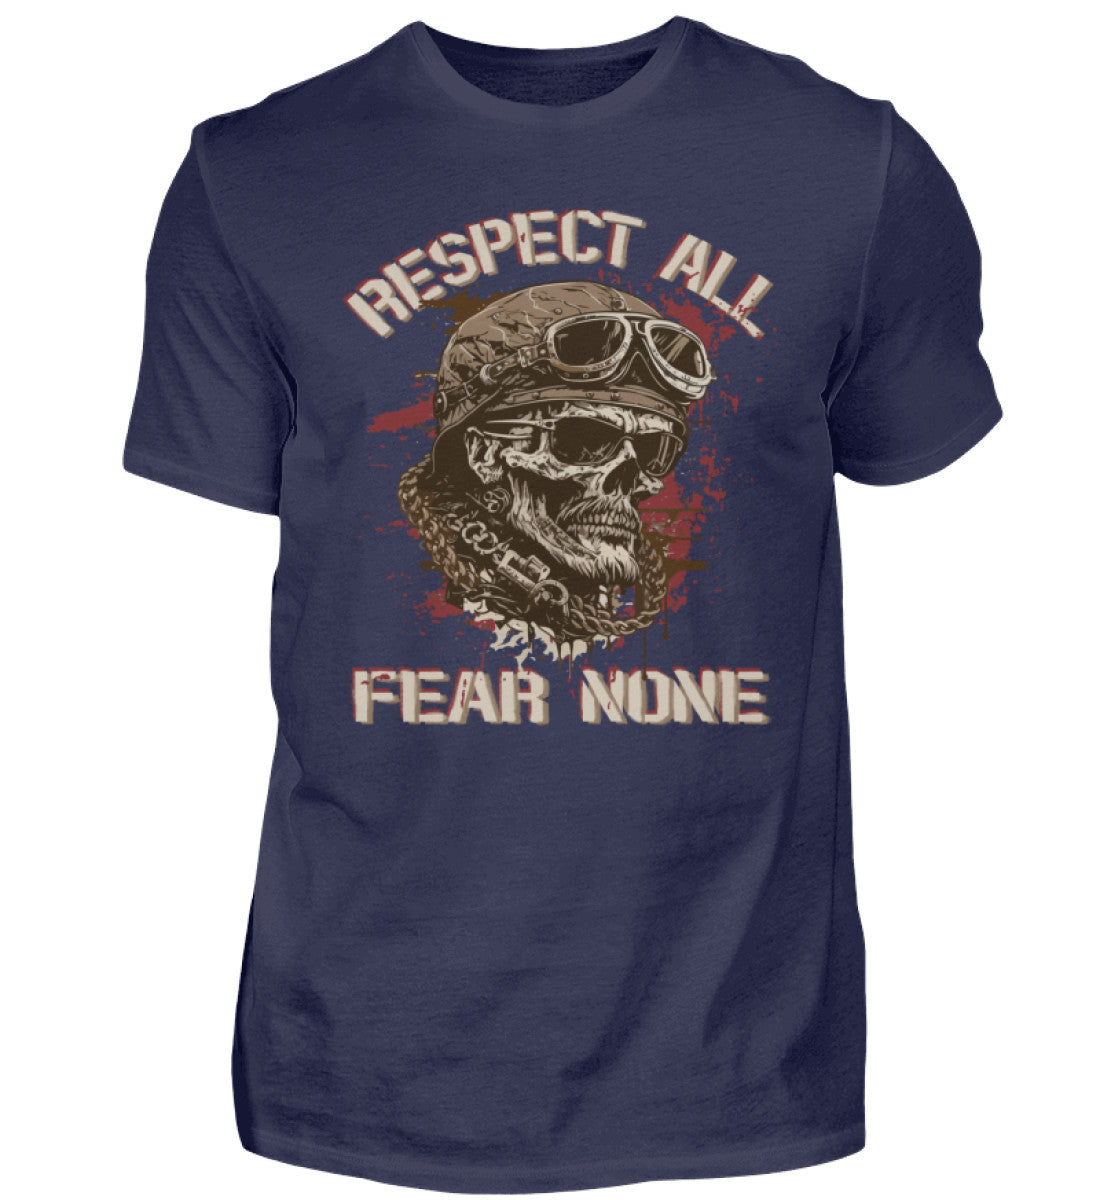 Ein Biker T-Shirt für Motorradfahrer von Wingbikers mit dem Aufdruck, Respect All - Fear None, in navy blau.